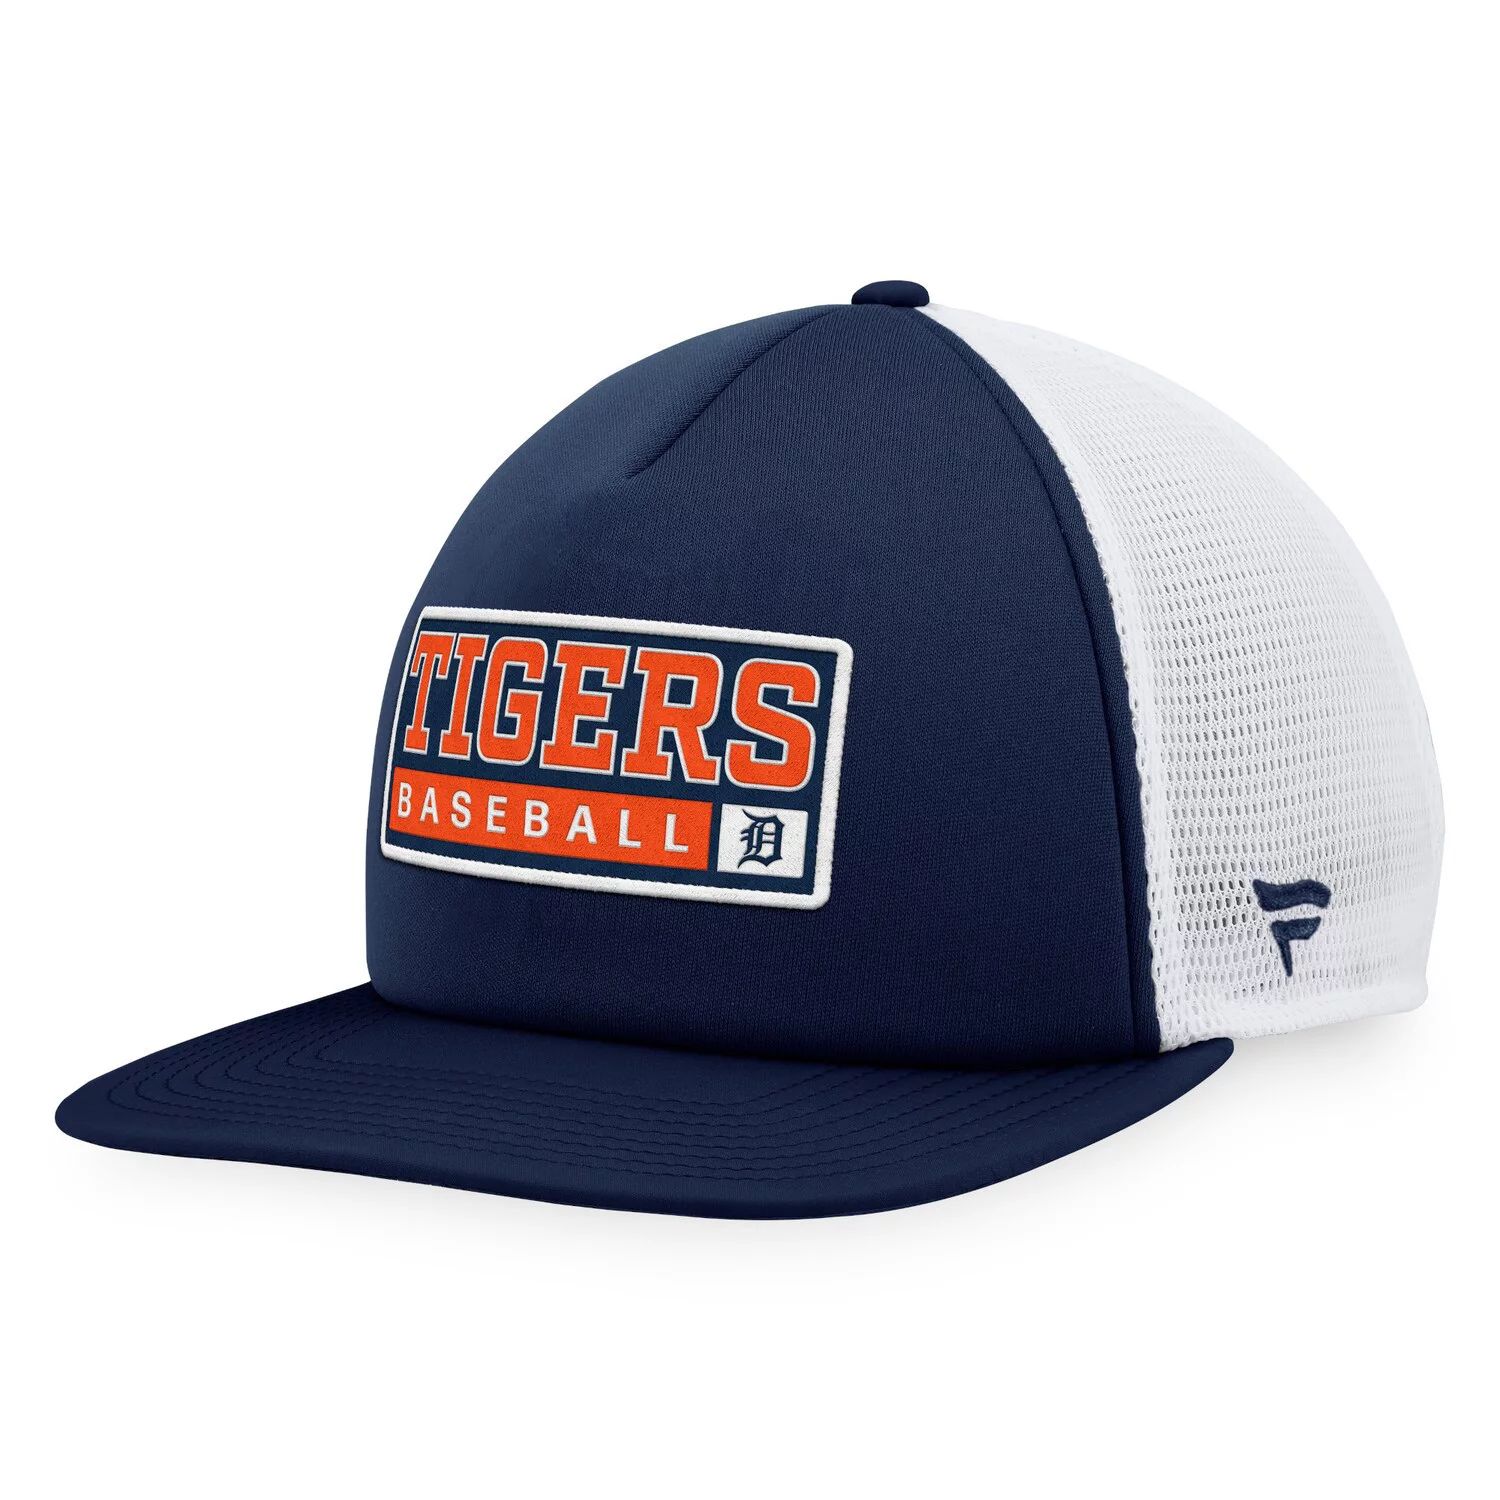 Мужская кепка Majestic темно-синего/белого цвета из пеноматериала Detroit Tigers Snapback